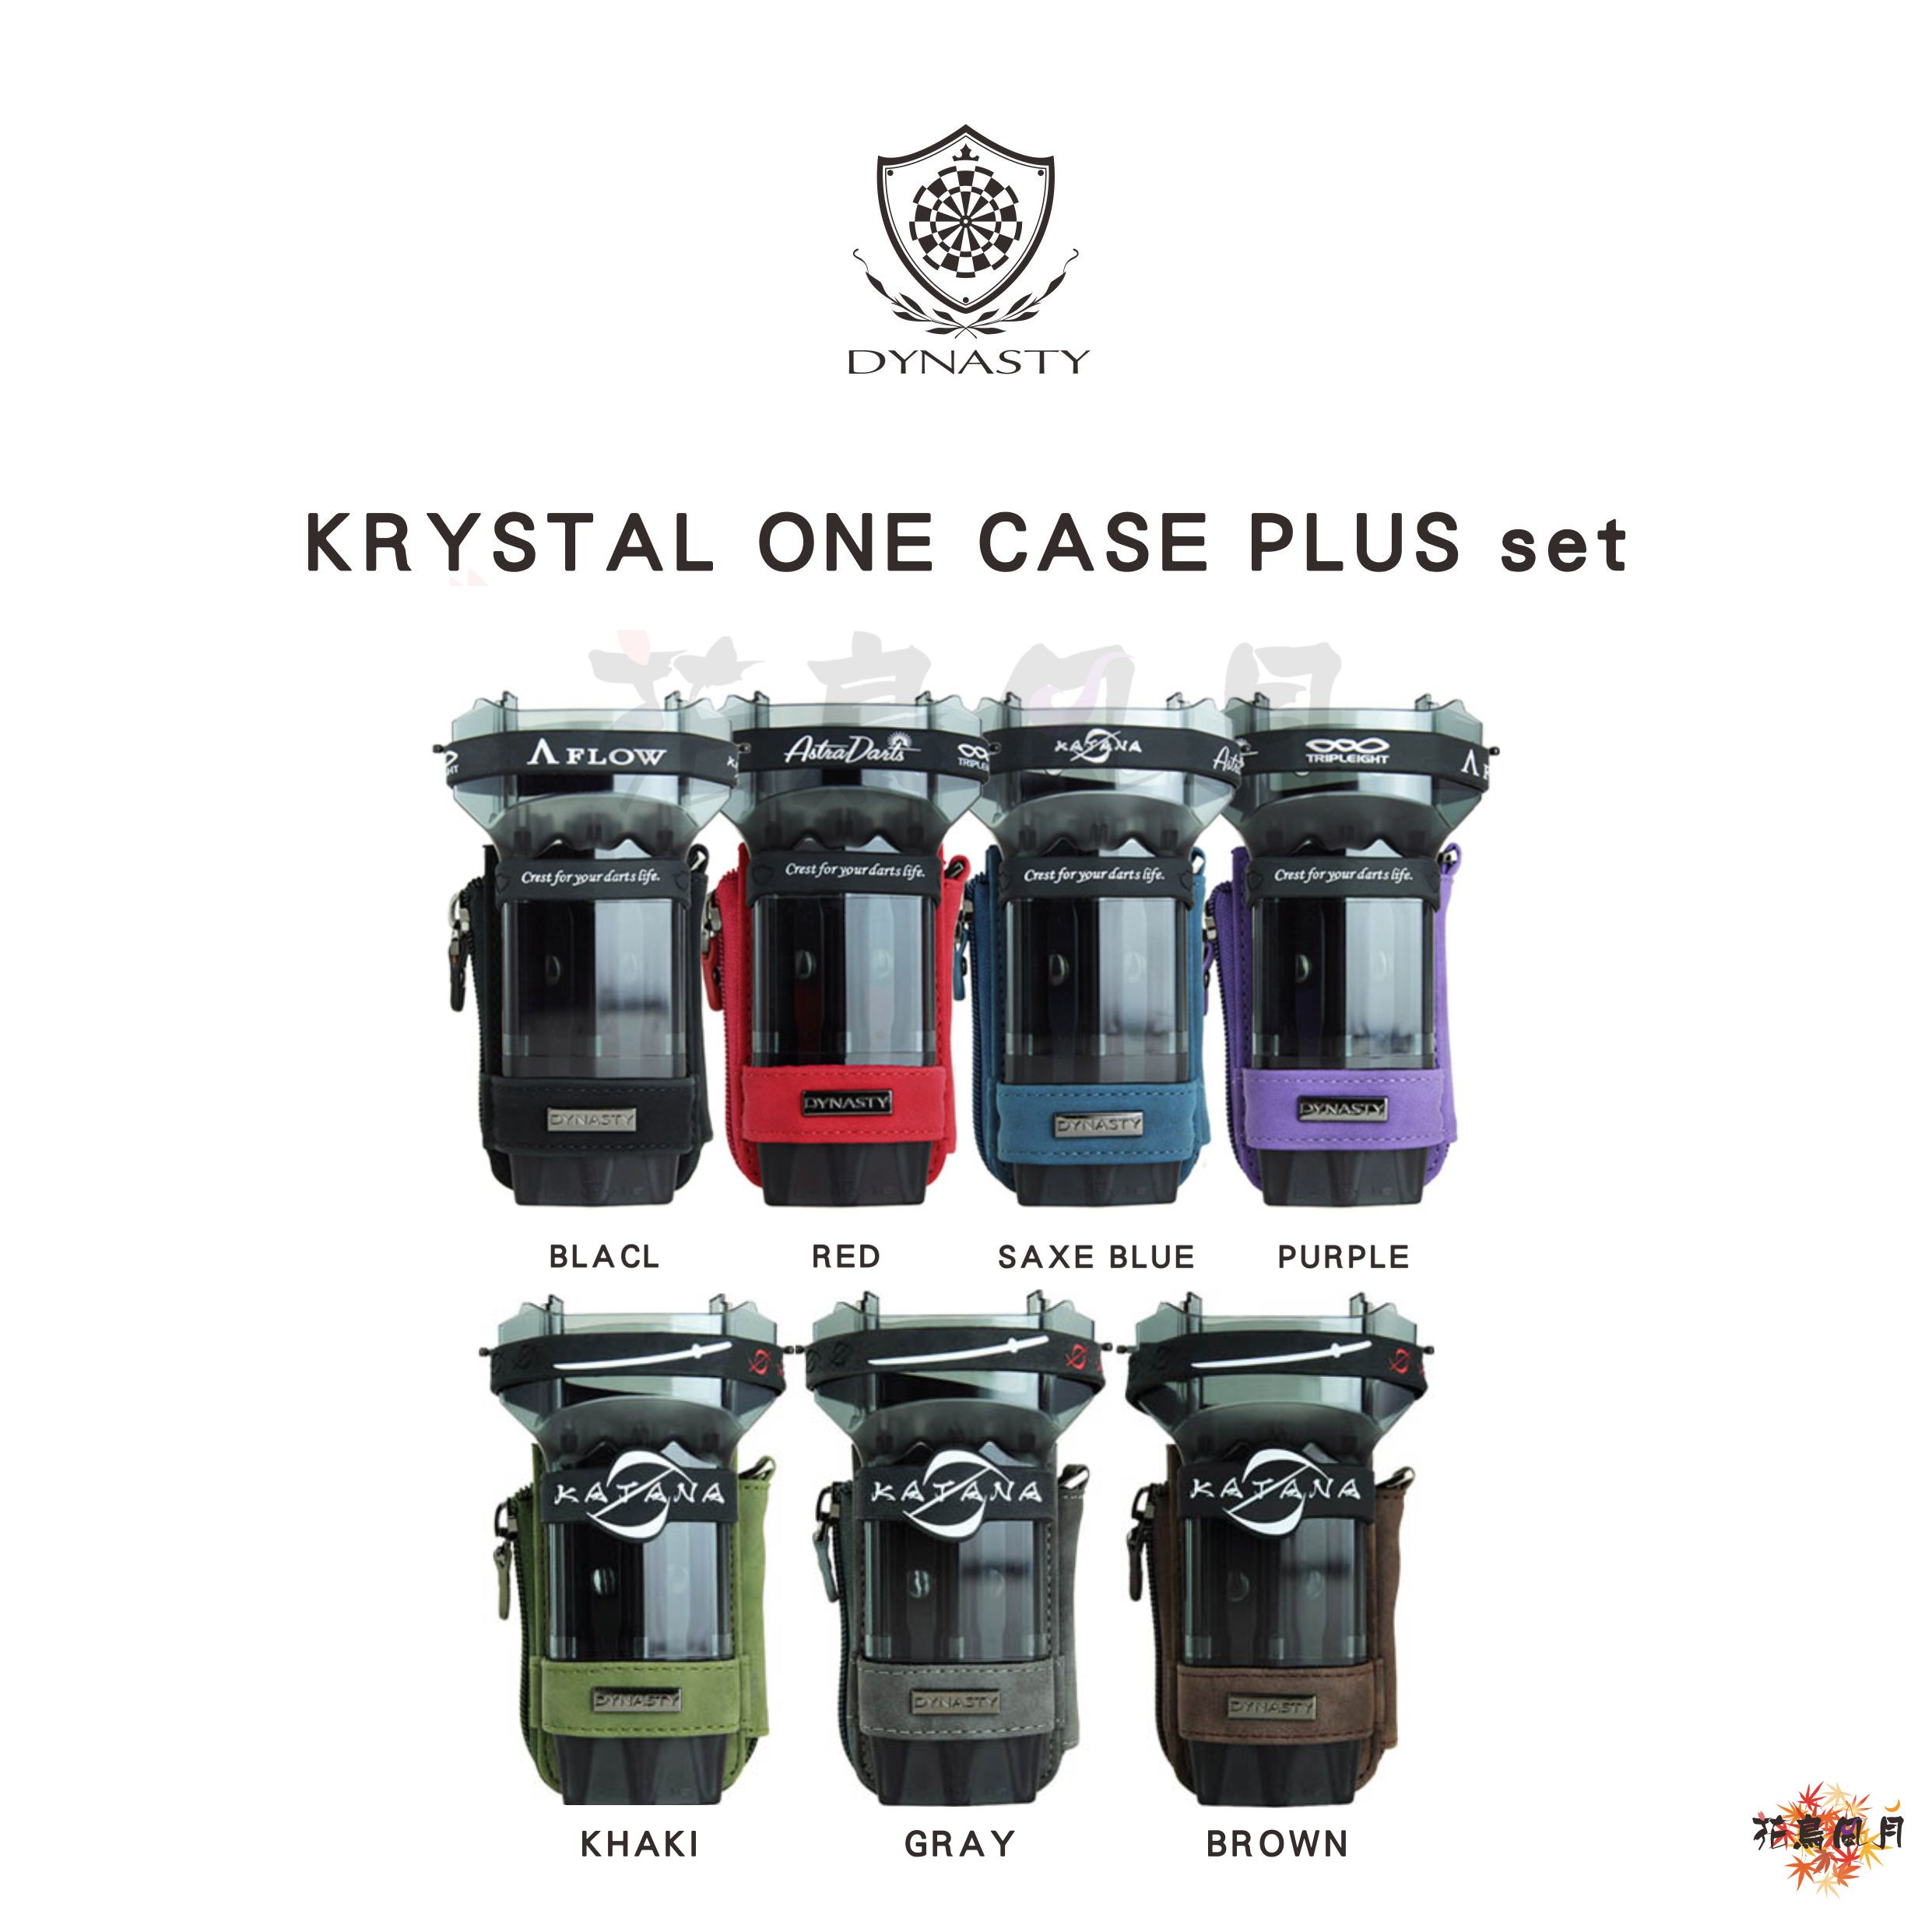 KRYSTAL-ONE-CASE-PLUS-set.jpg